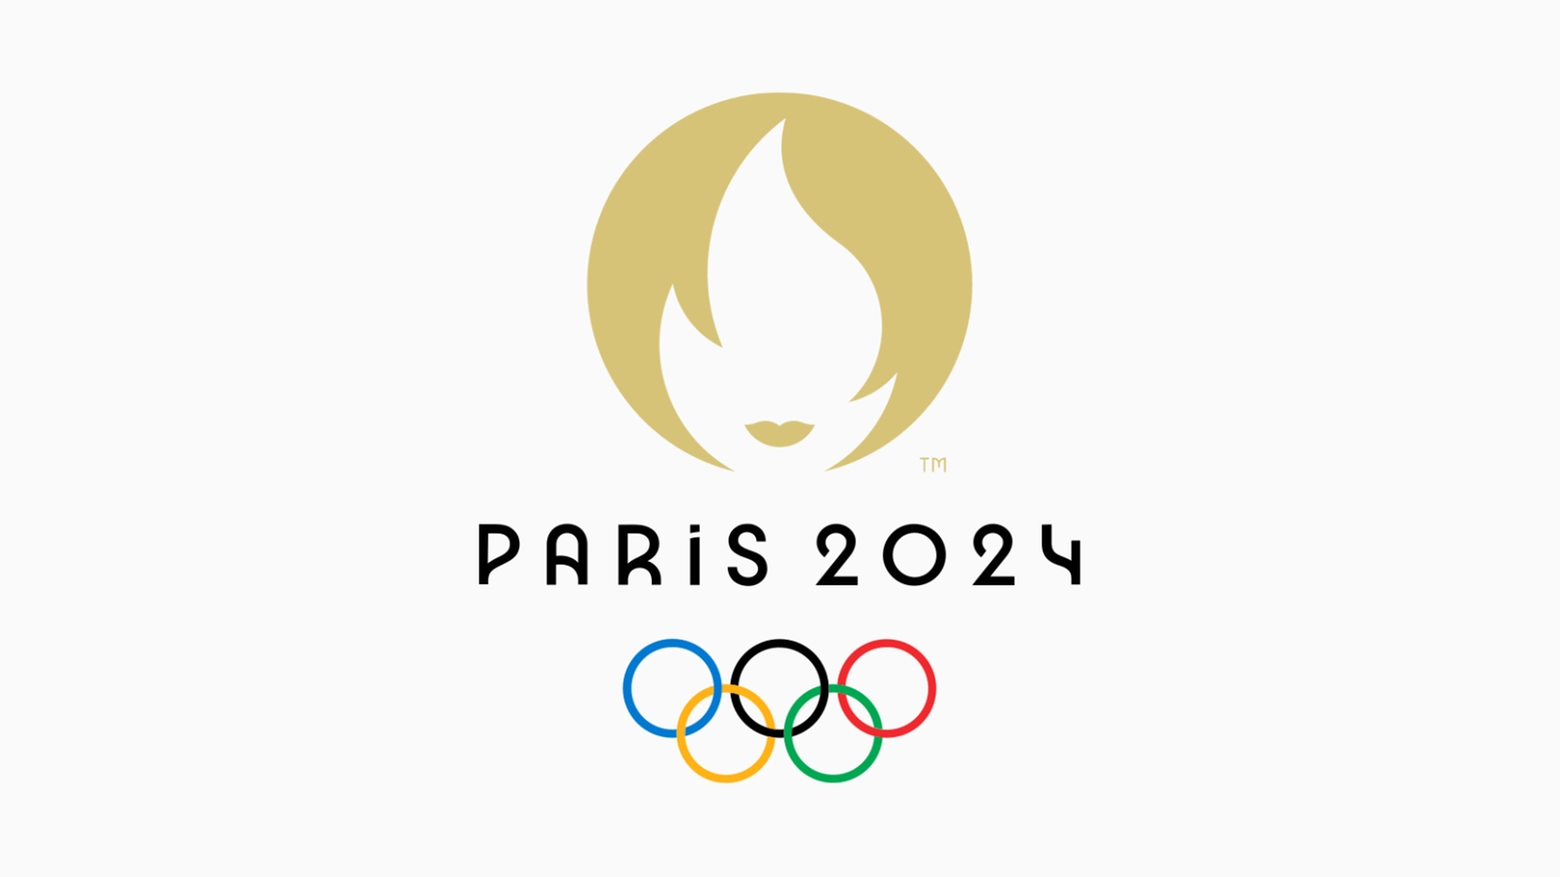 Il logo delle Olimpiadi di Parigi 2024